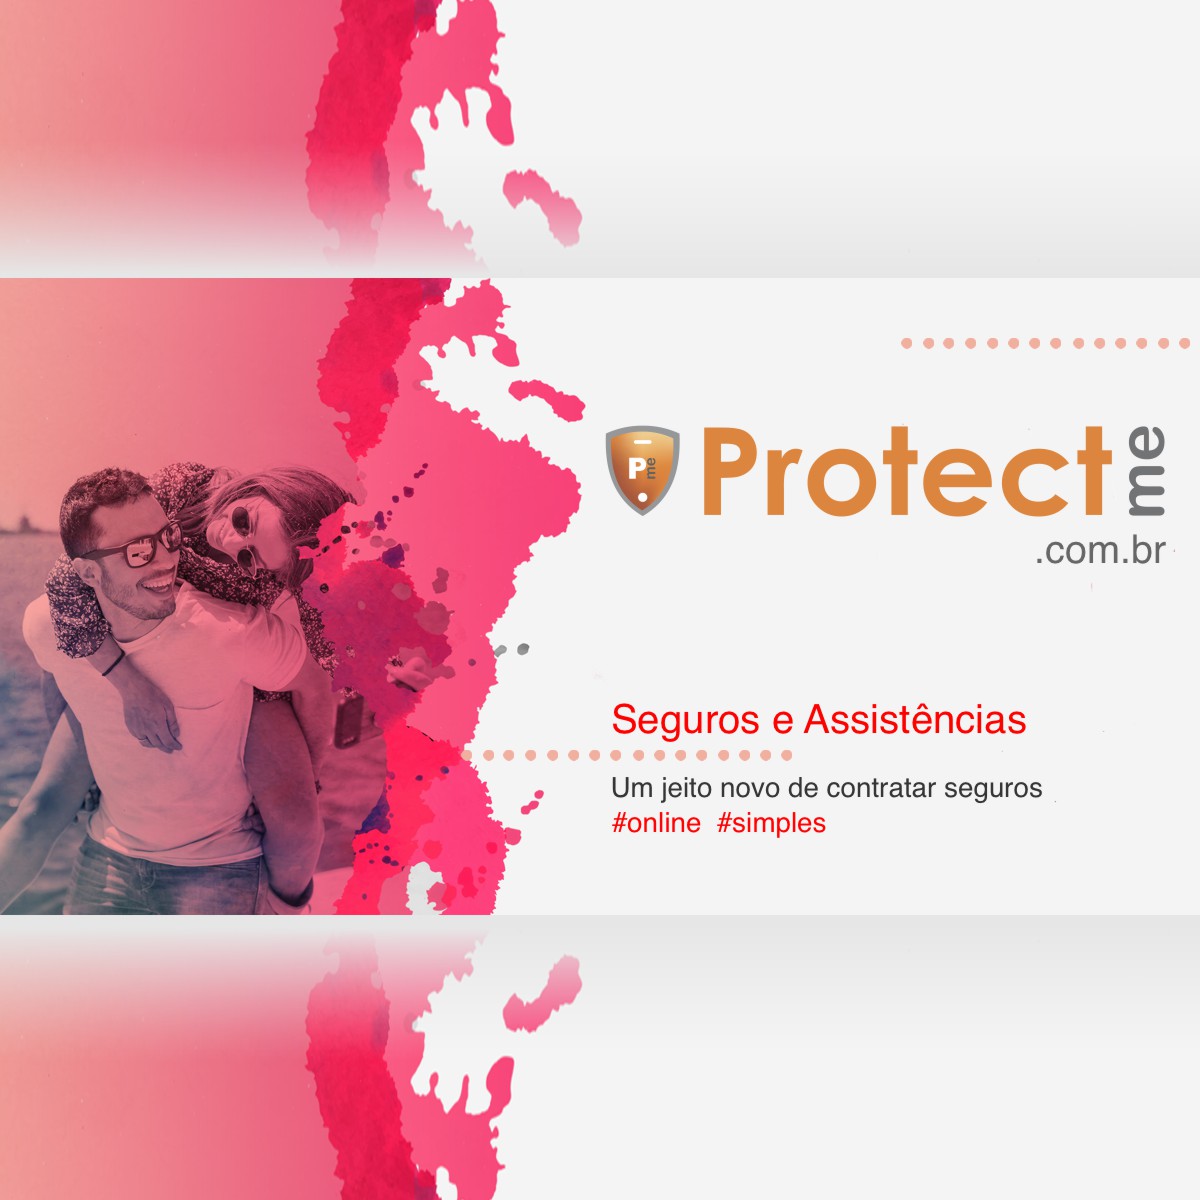 (c) Protectme.com.br